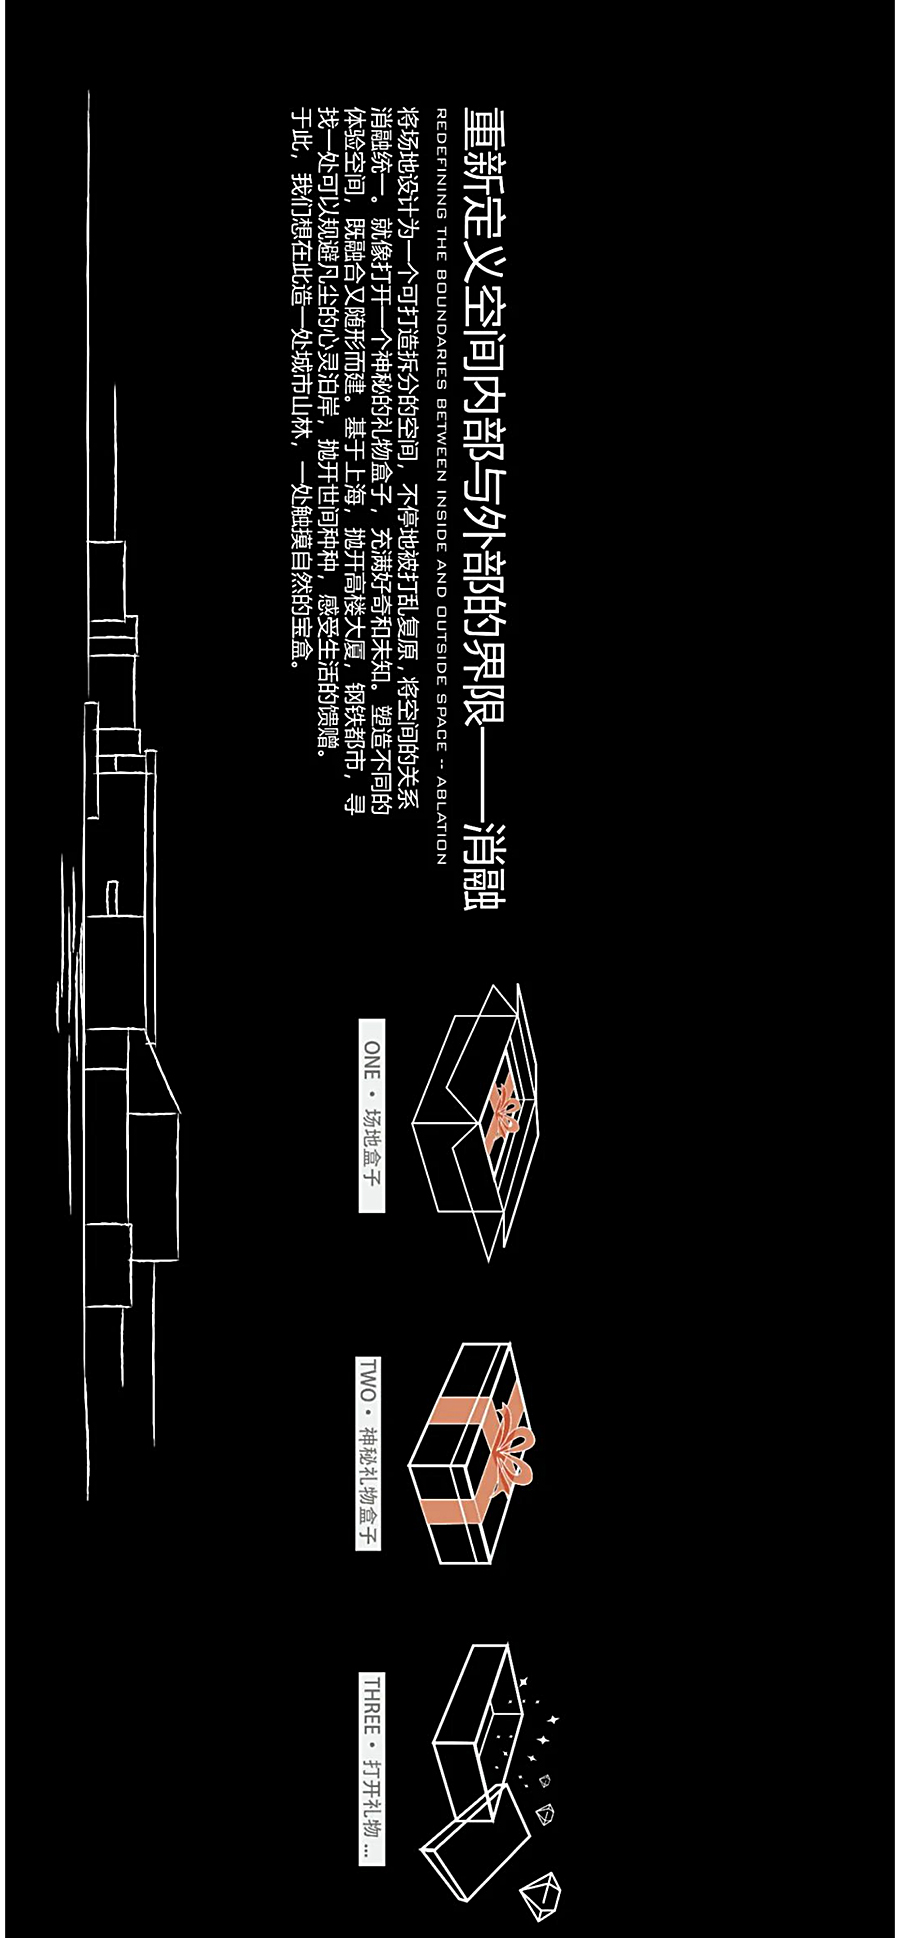 折叠空间中的情感释放-_-上海·招商虹桥公馆_0005_图层-6.jpg